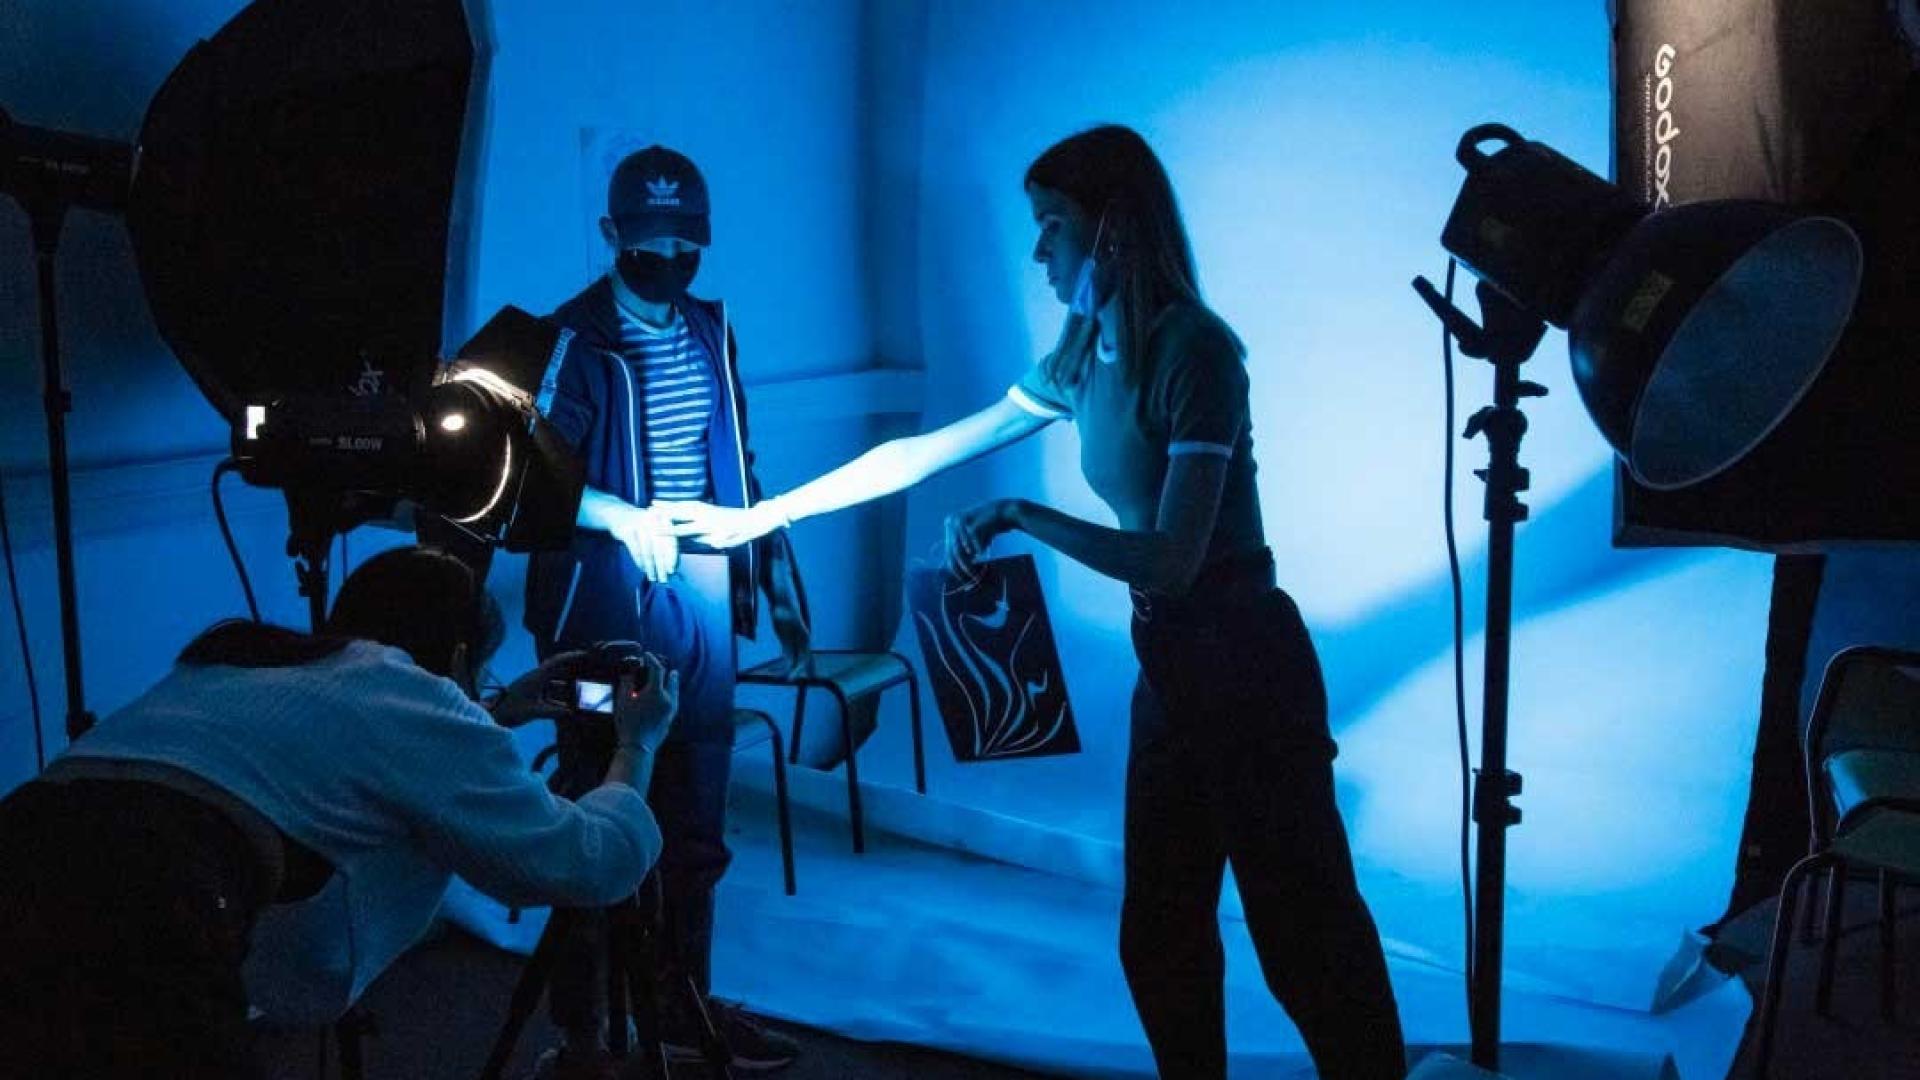 Des étudiants en train de réaliser une vidéo dans un studio aux éclairages bleus